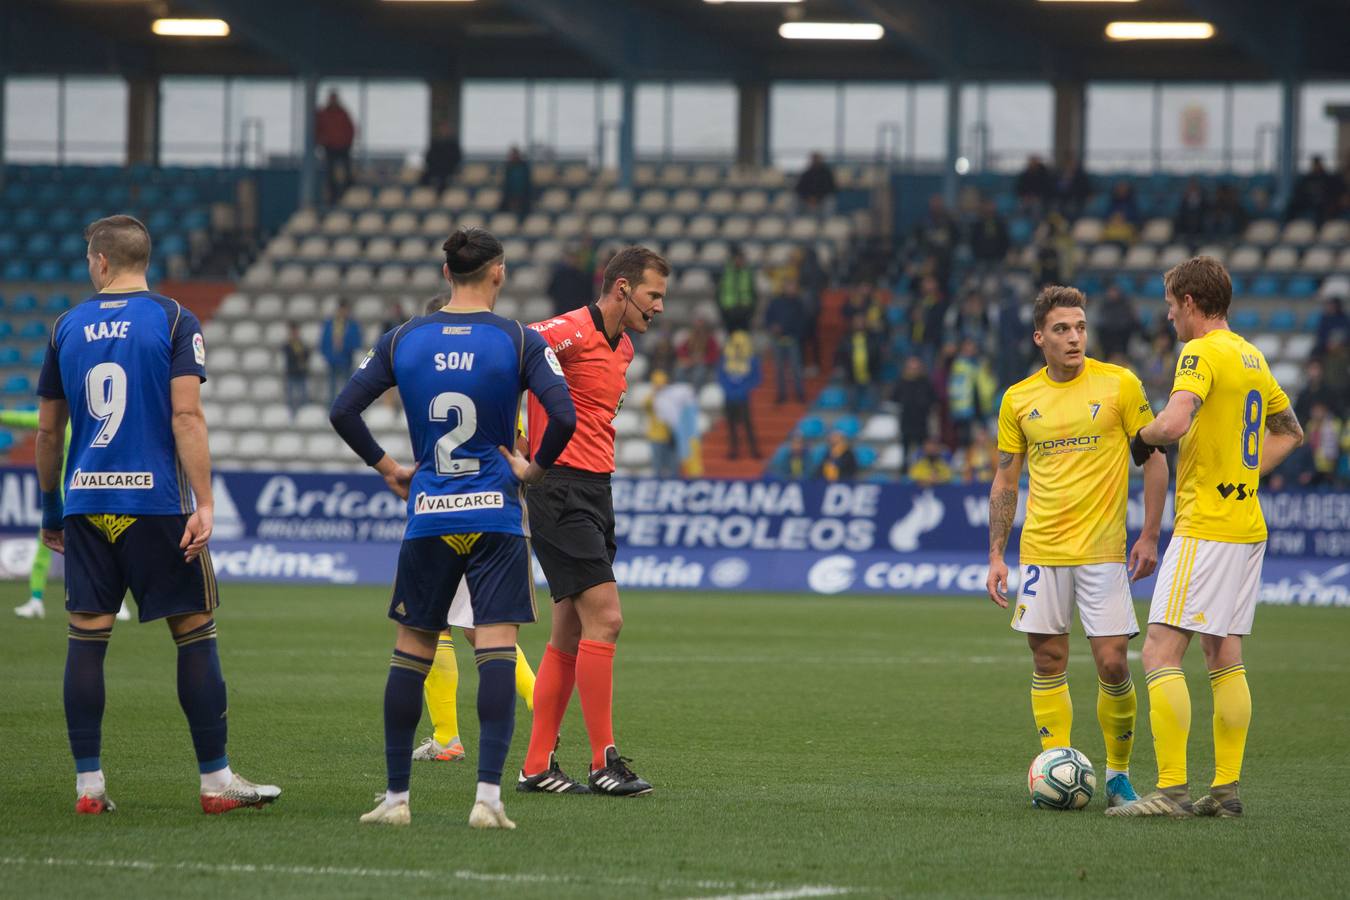 Ponferradina-Cádiz CF (0-0)